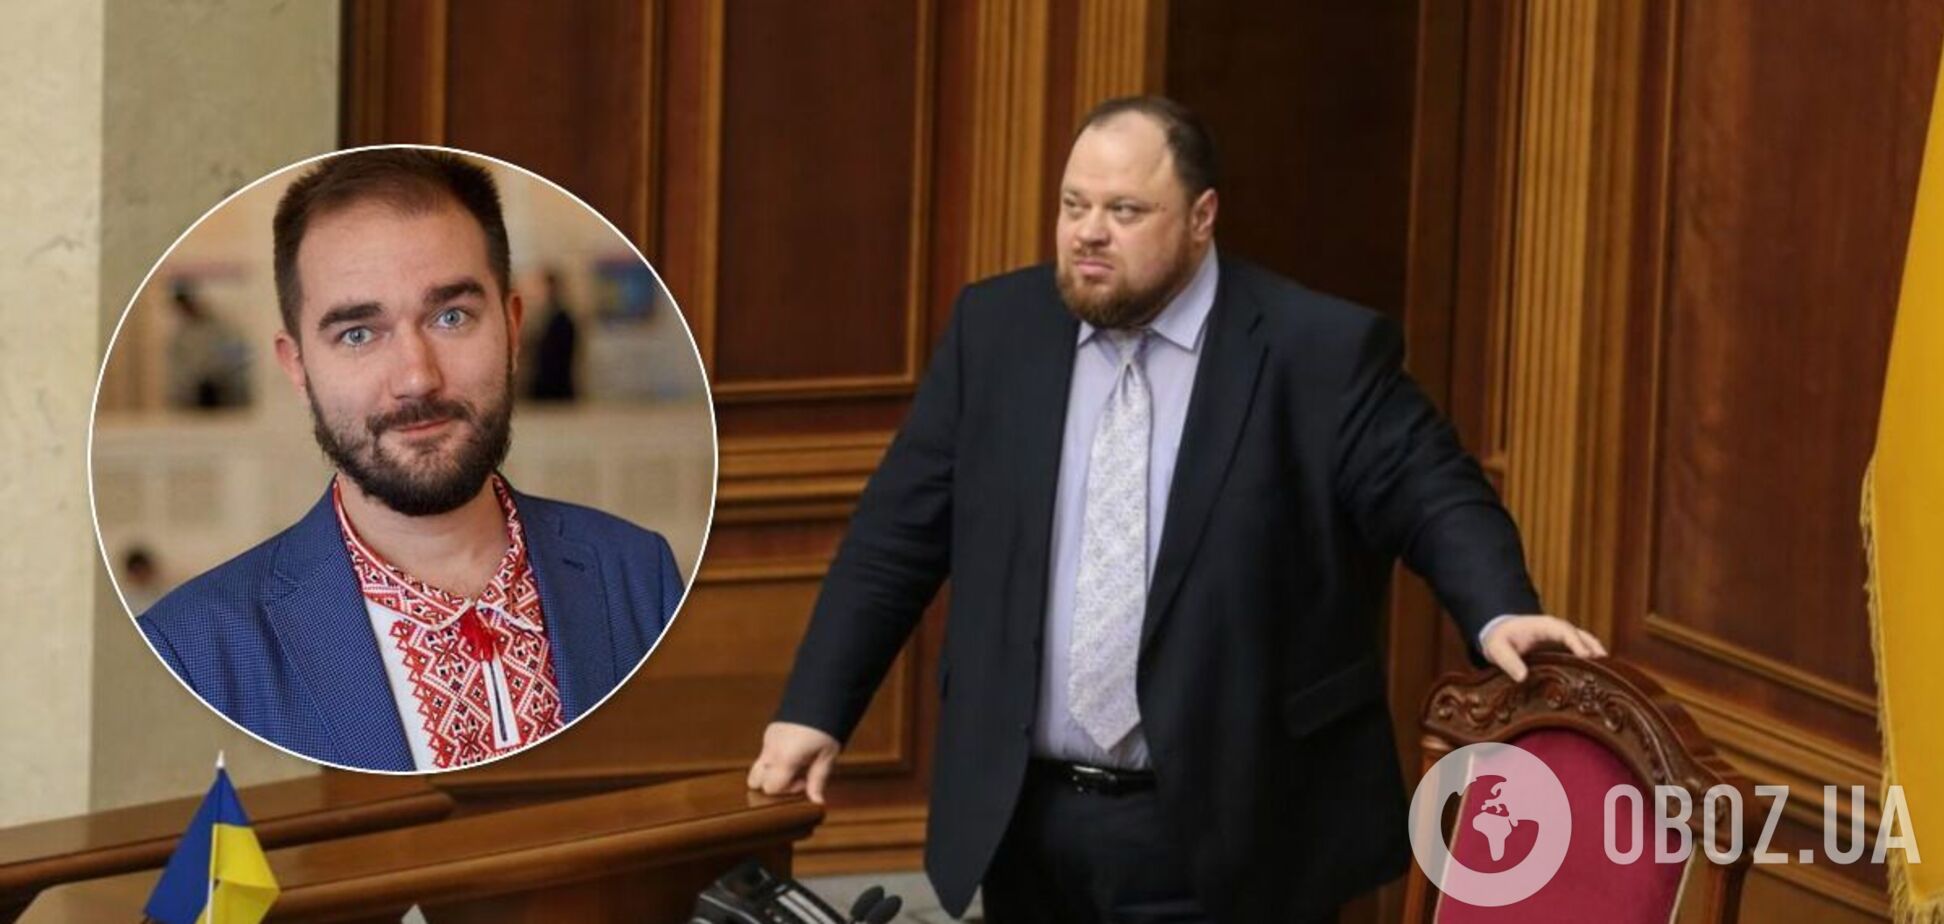 Стефанчук объявил об исключении Юрченко из 'Слуги народа'